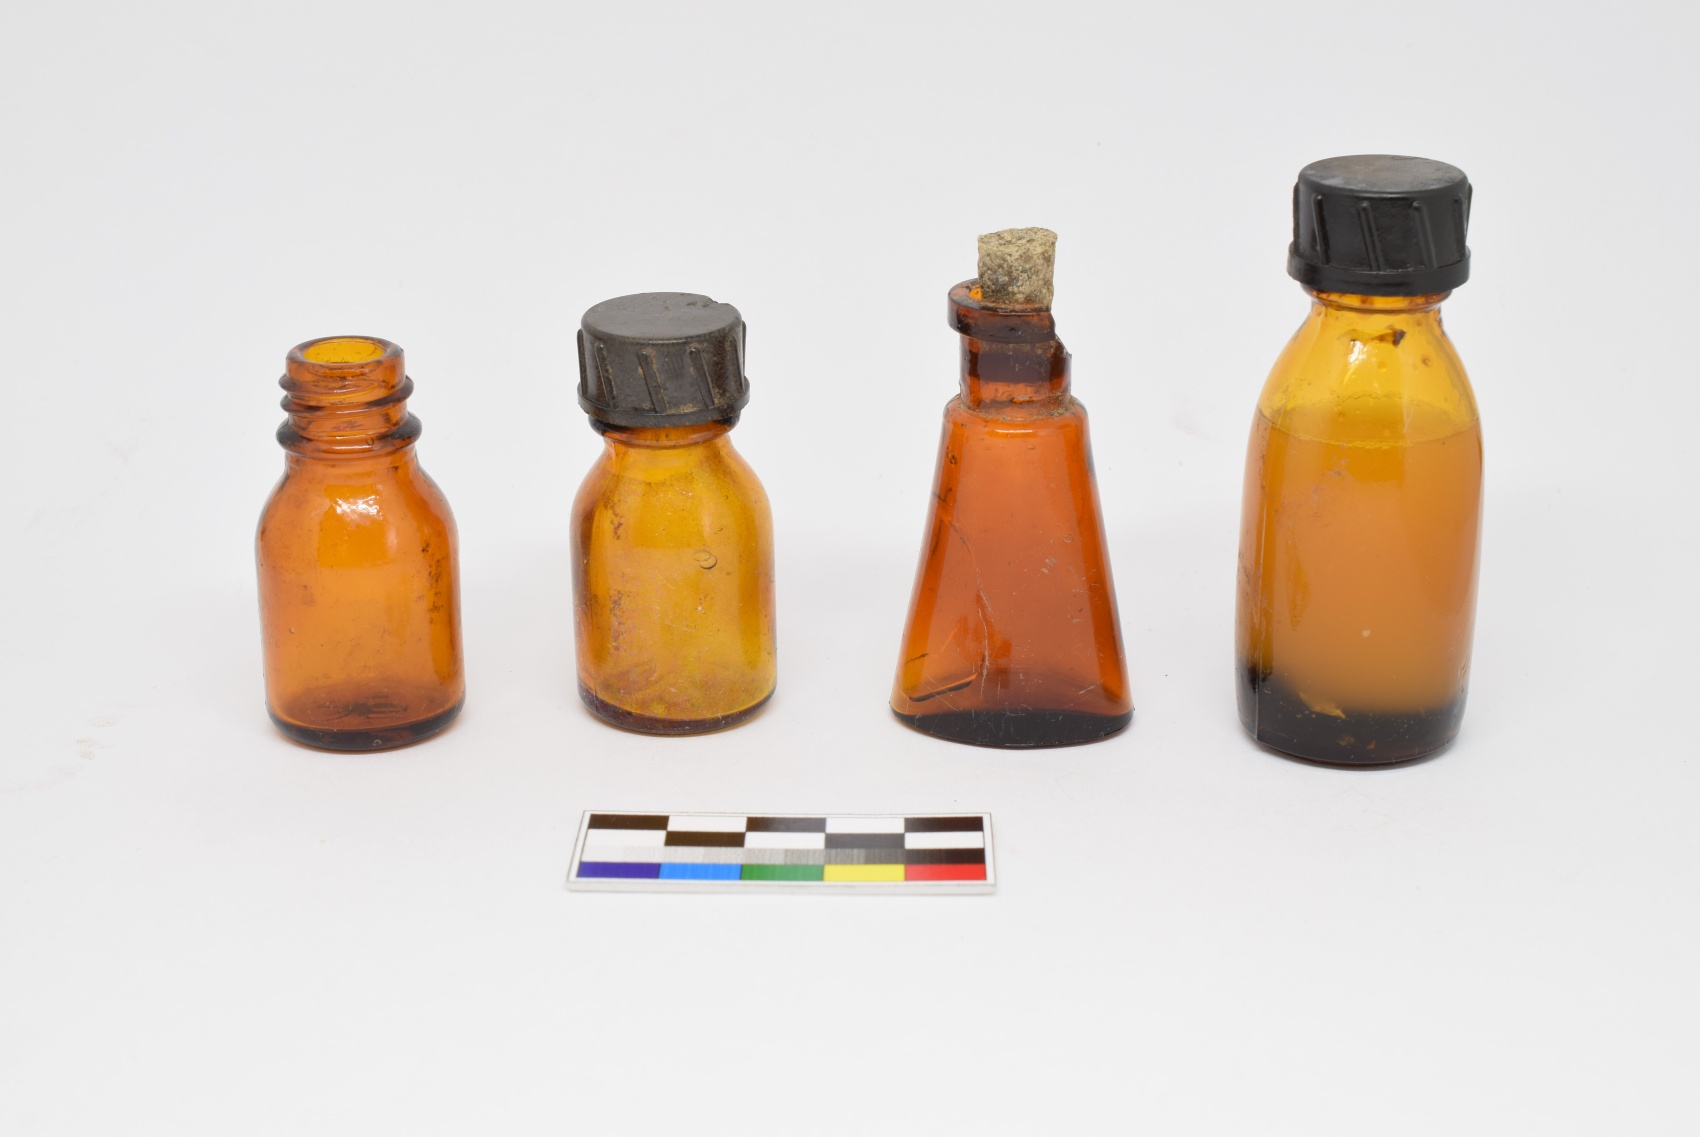 lekovky nalezy arch. vyzkumu v taborech Nikolaj a Elias II